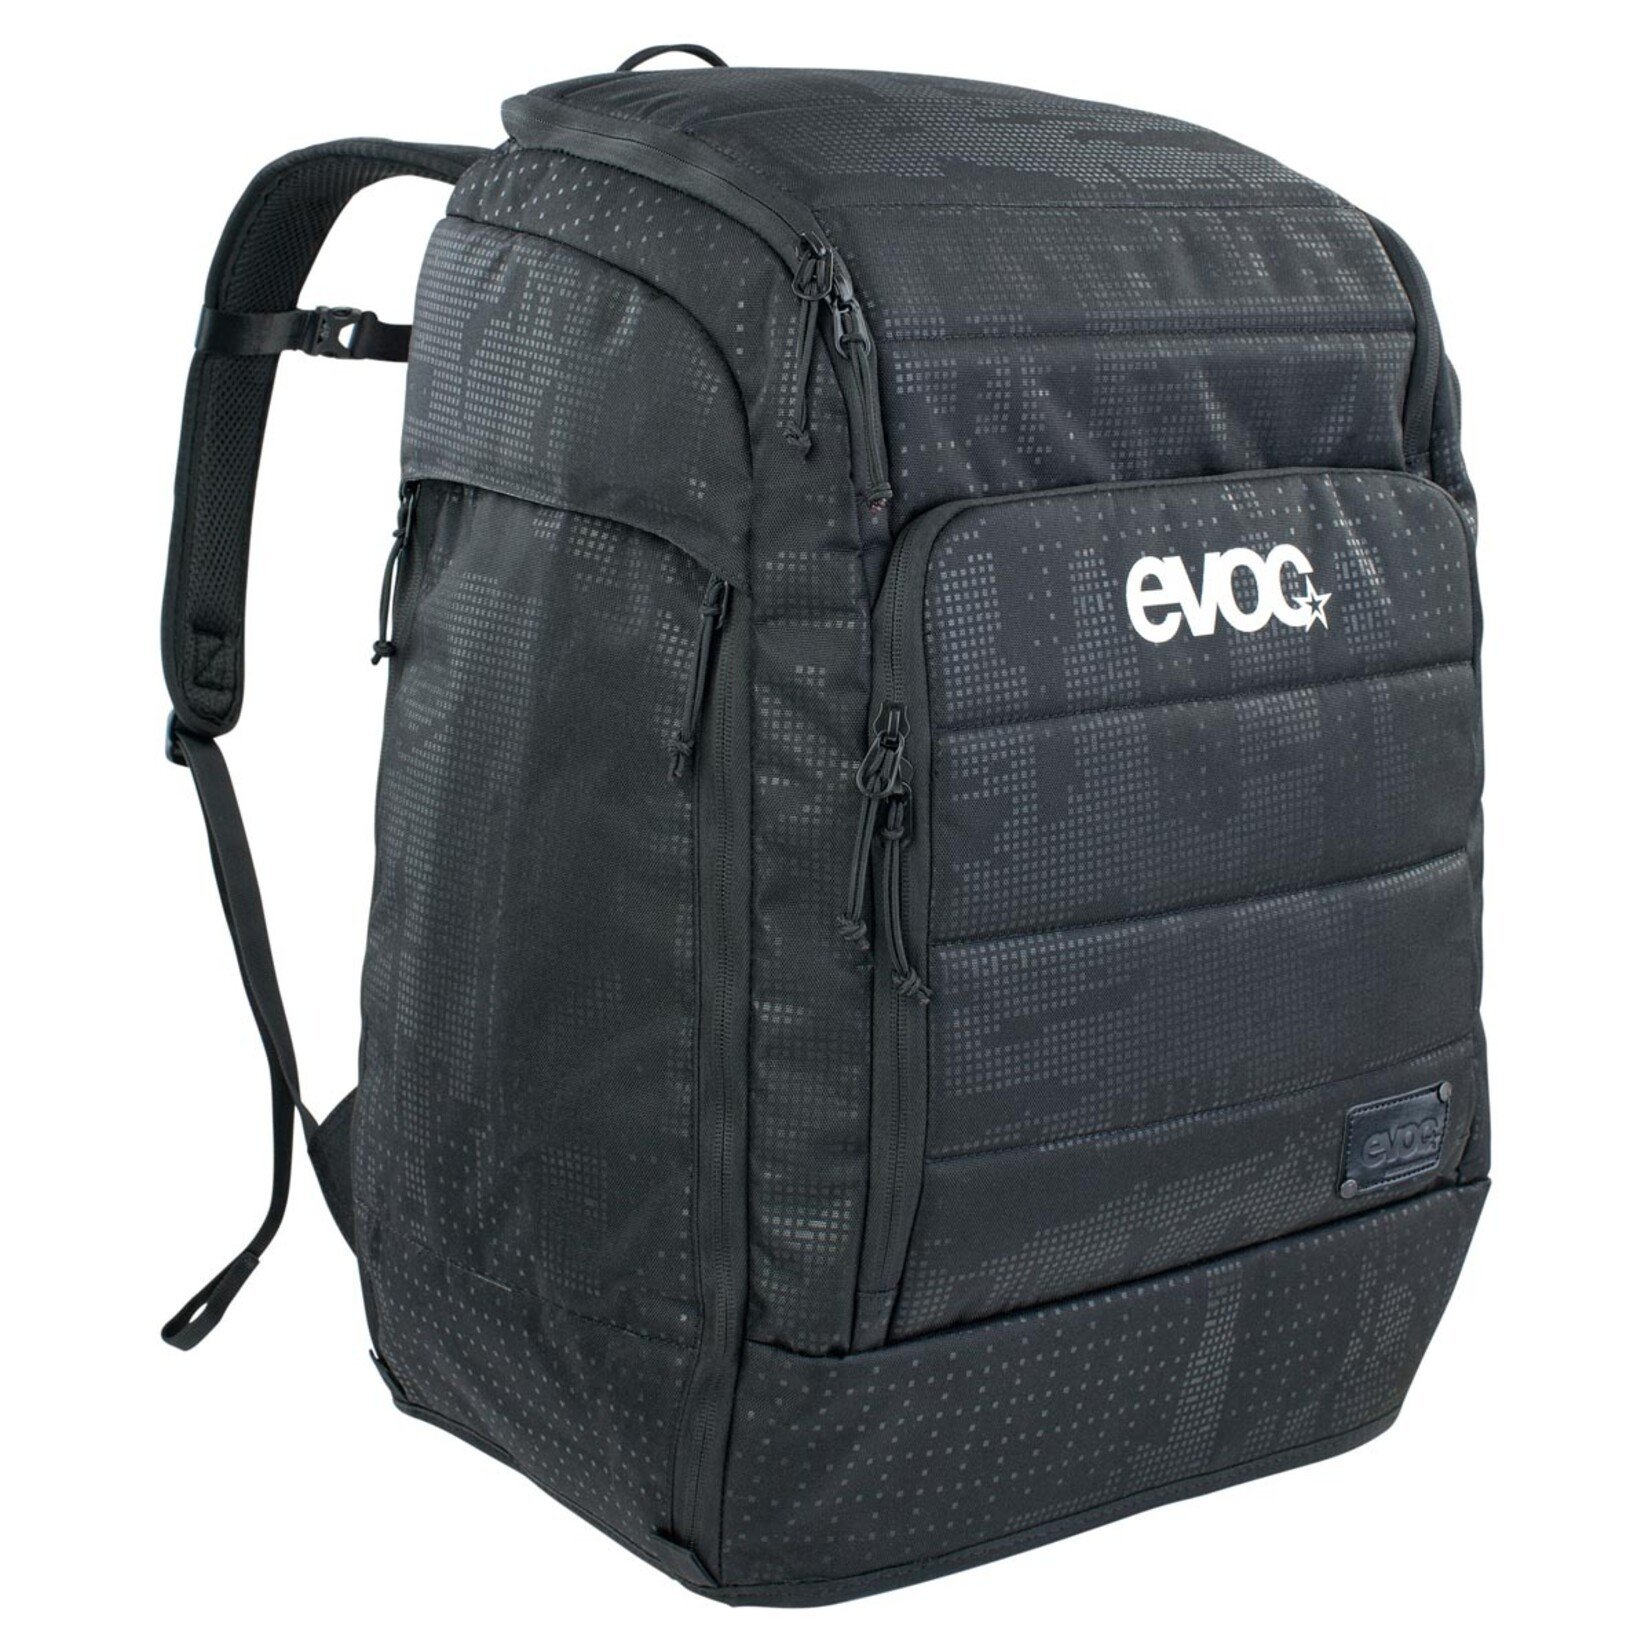 EVOC, Gear Backpack 90, Backpack, 90L, Black - Rockland Sports